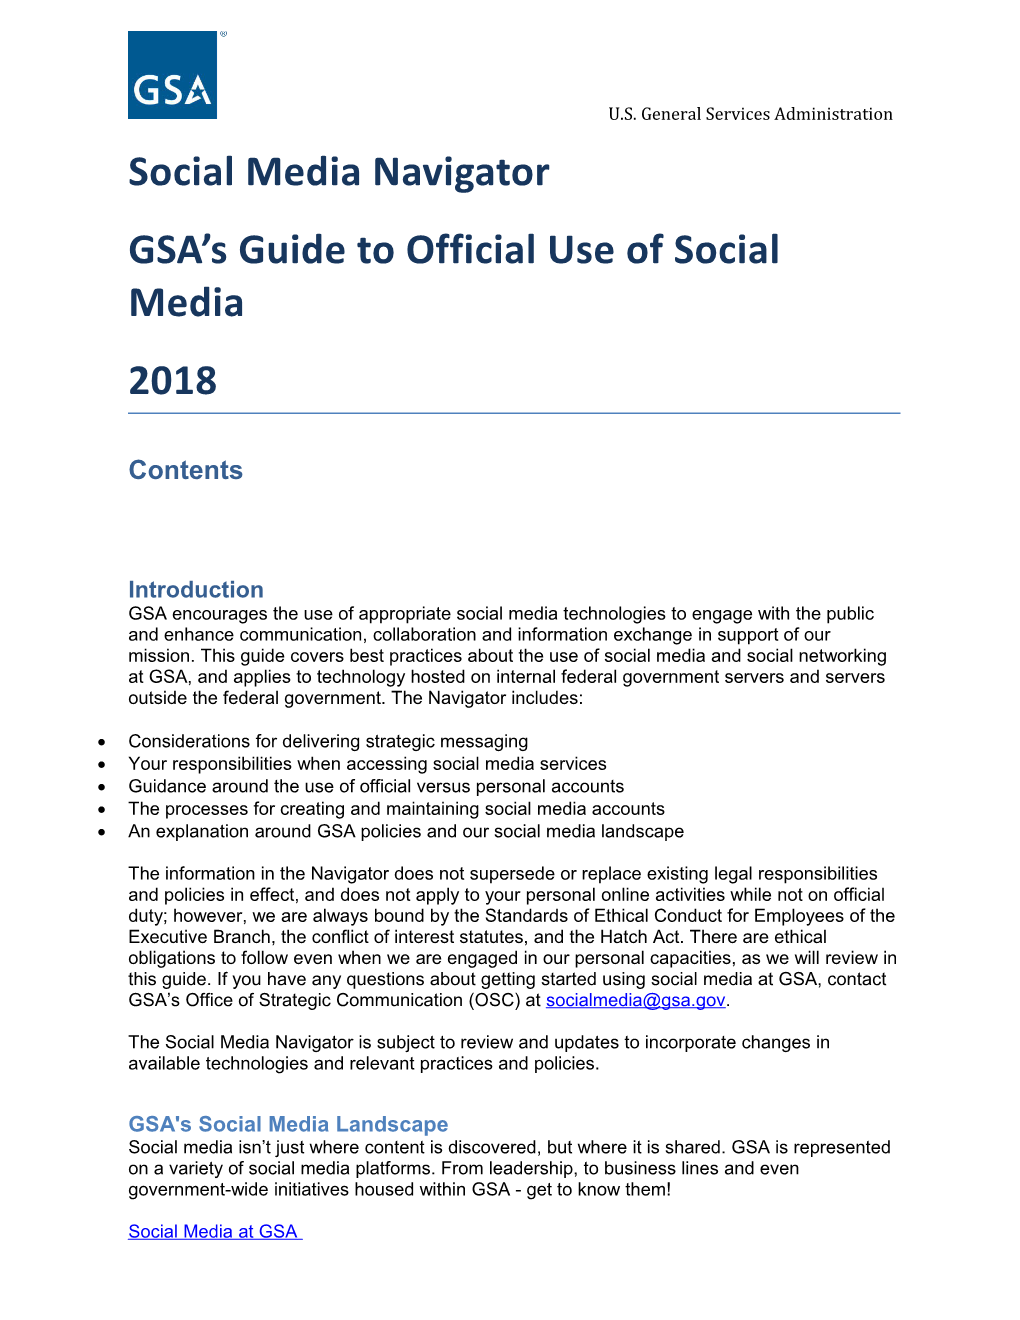 GSA Social Media Navigator 2018